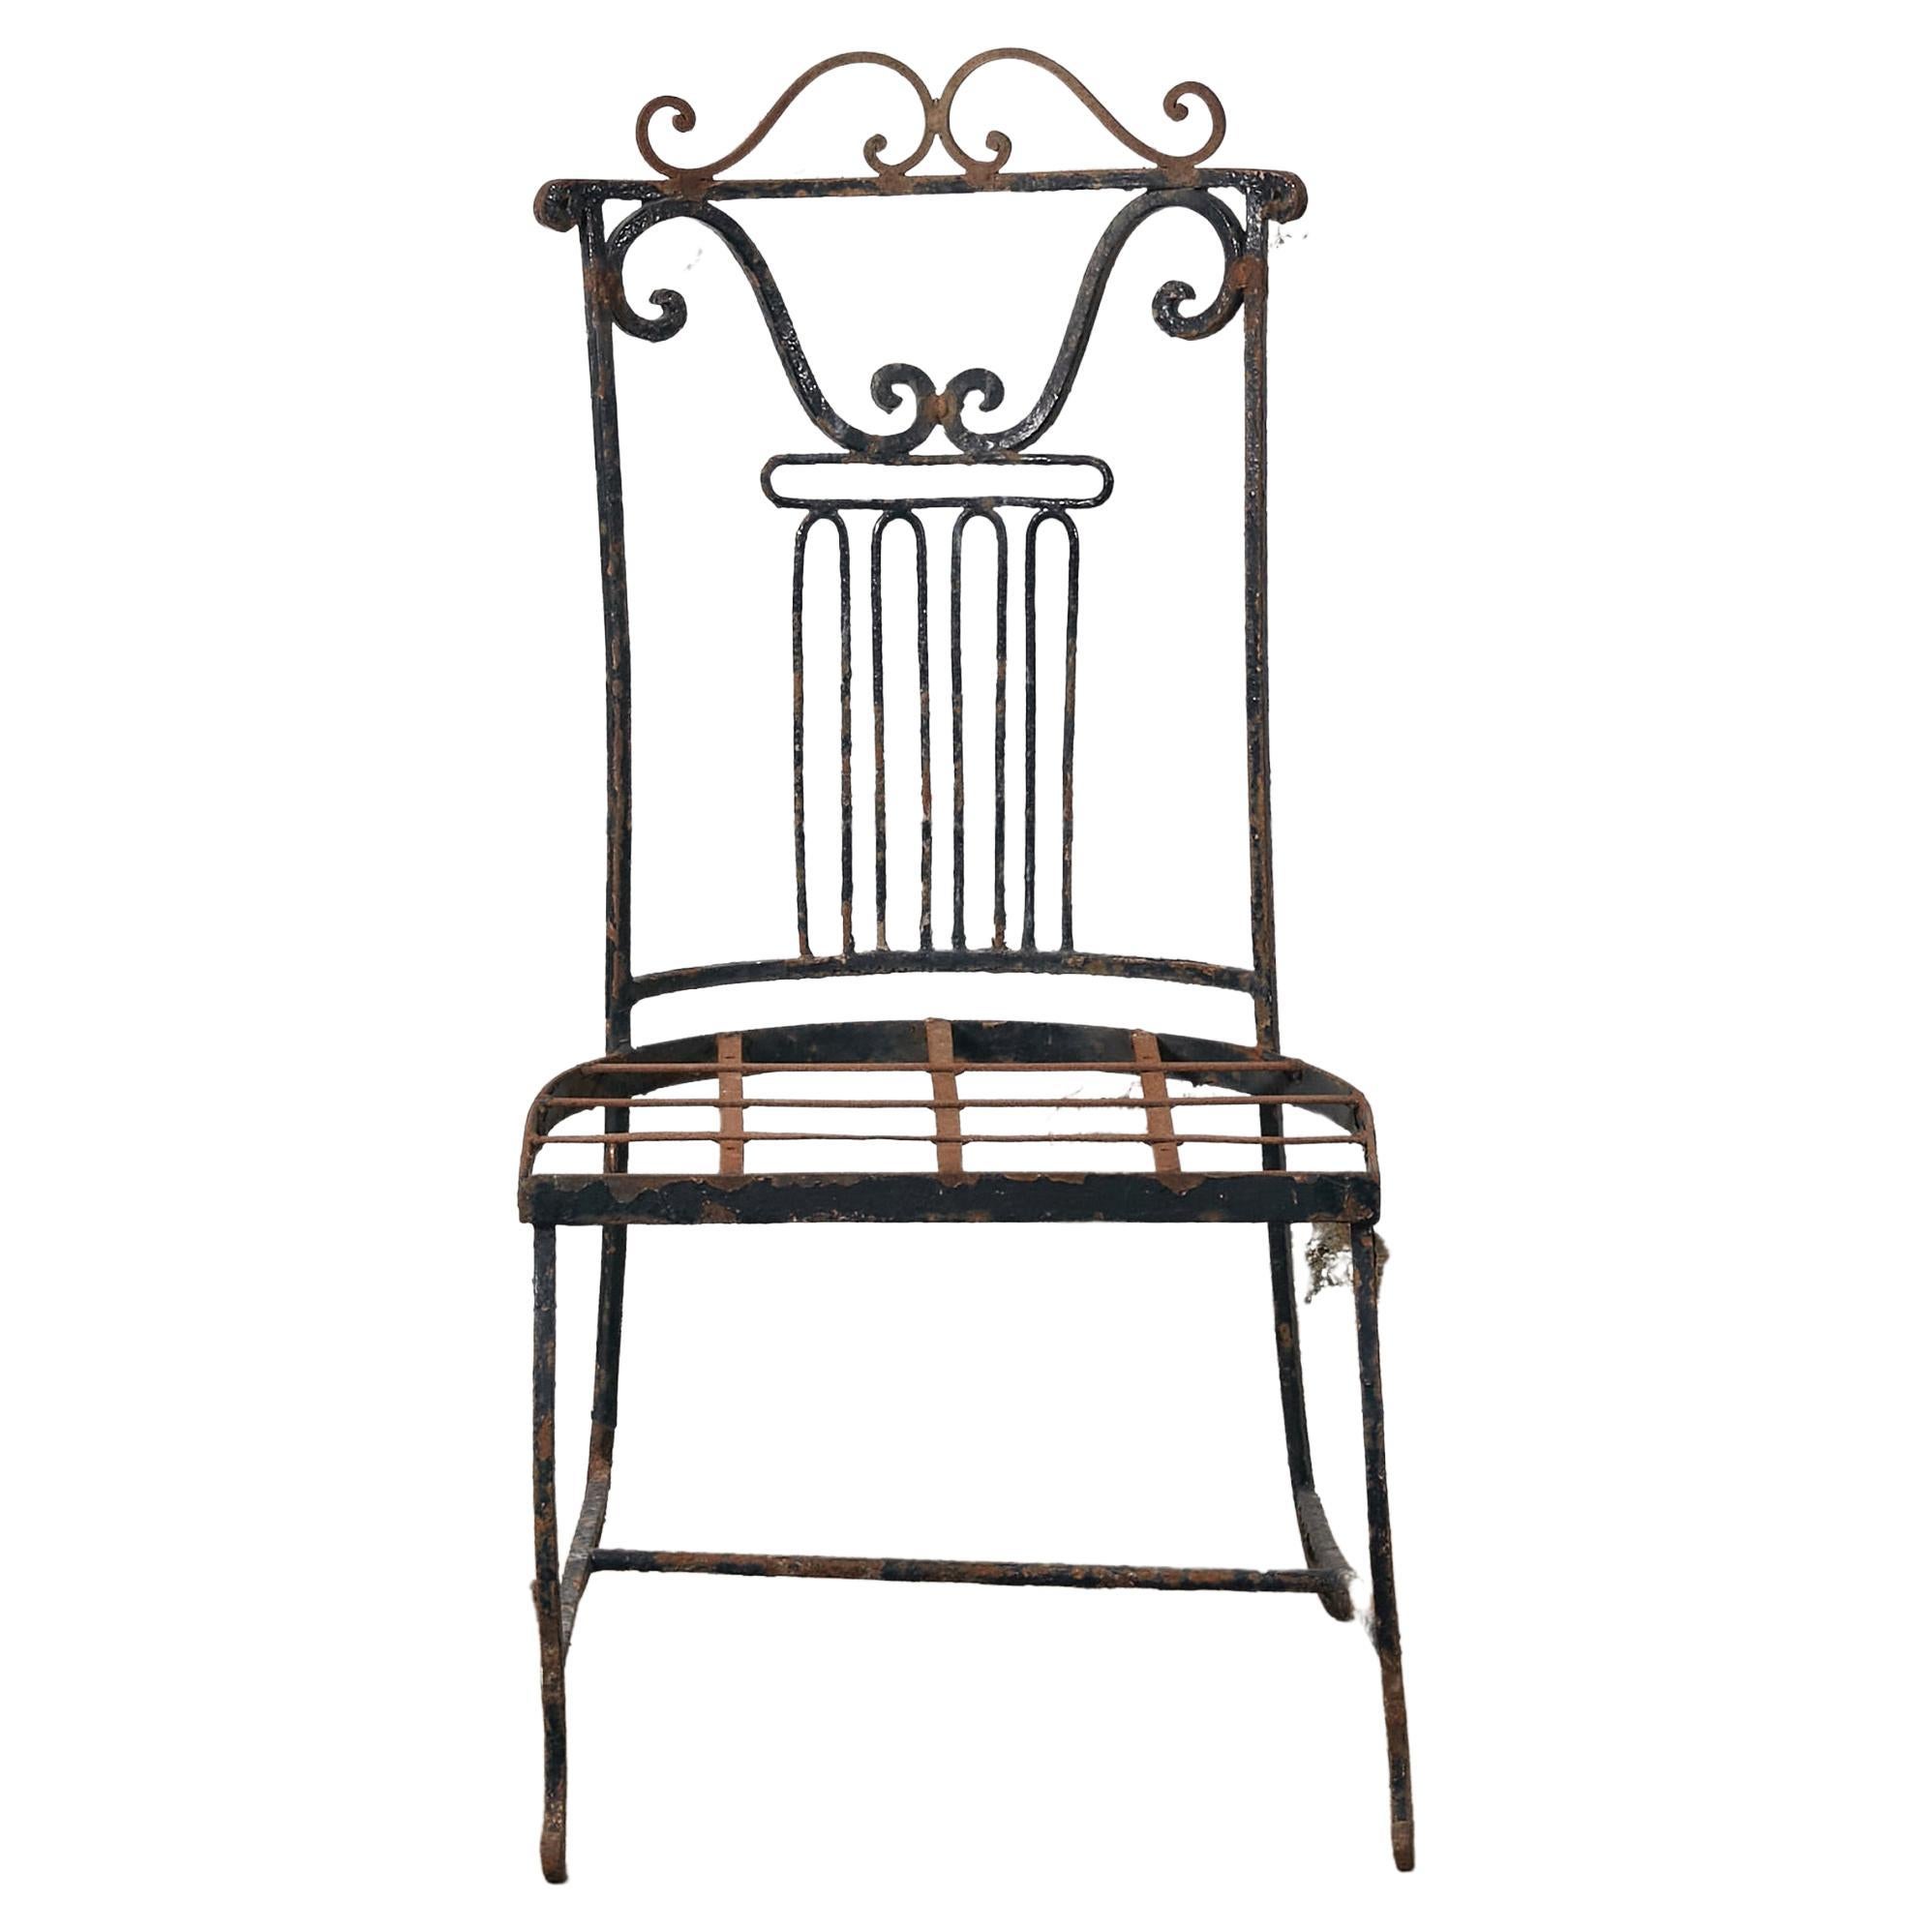 Seltener Satz von vier Garten-/Patio-Stühlen mit originaler Patina